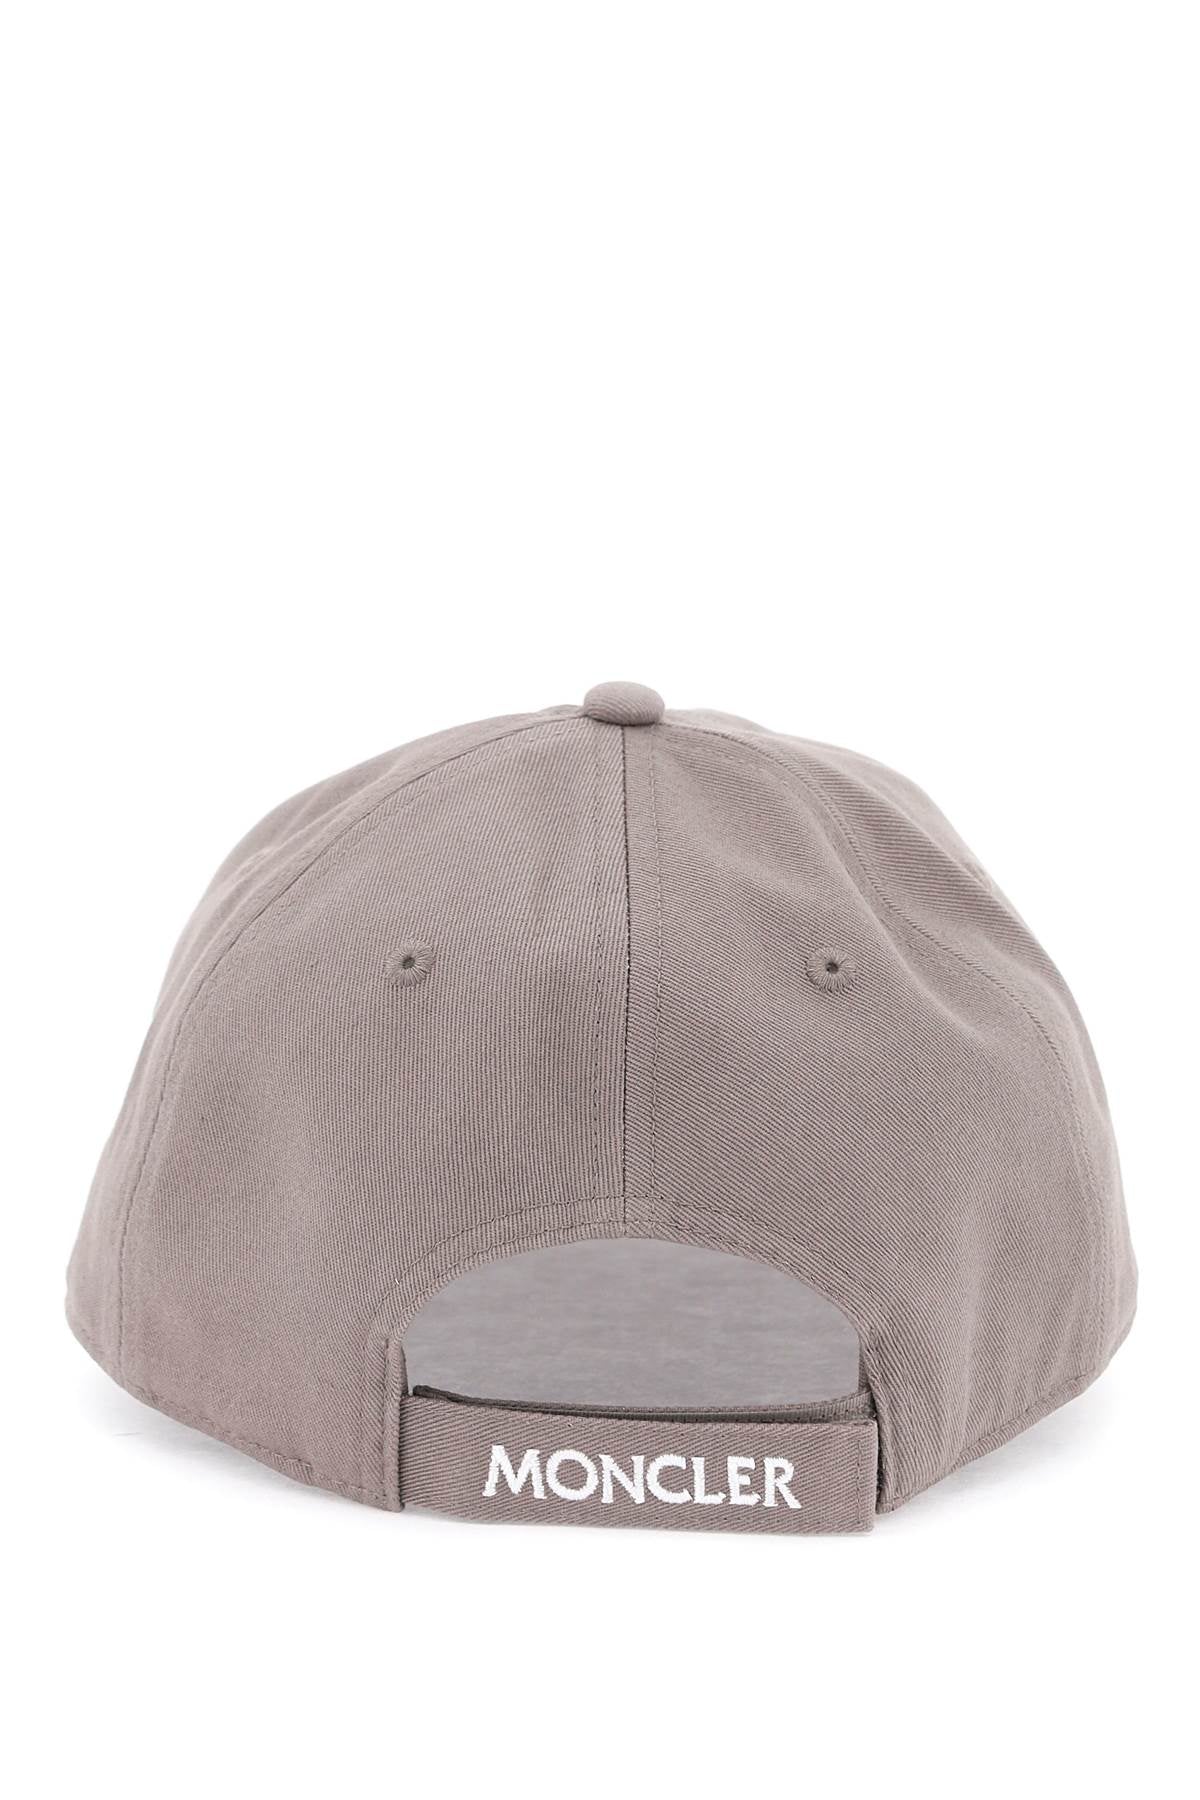 Moncler MONCLER Hat beige 3B00041V0006906